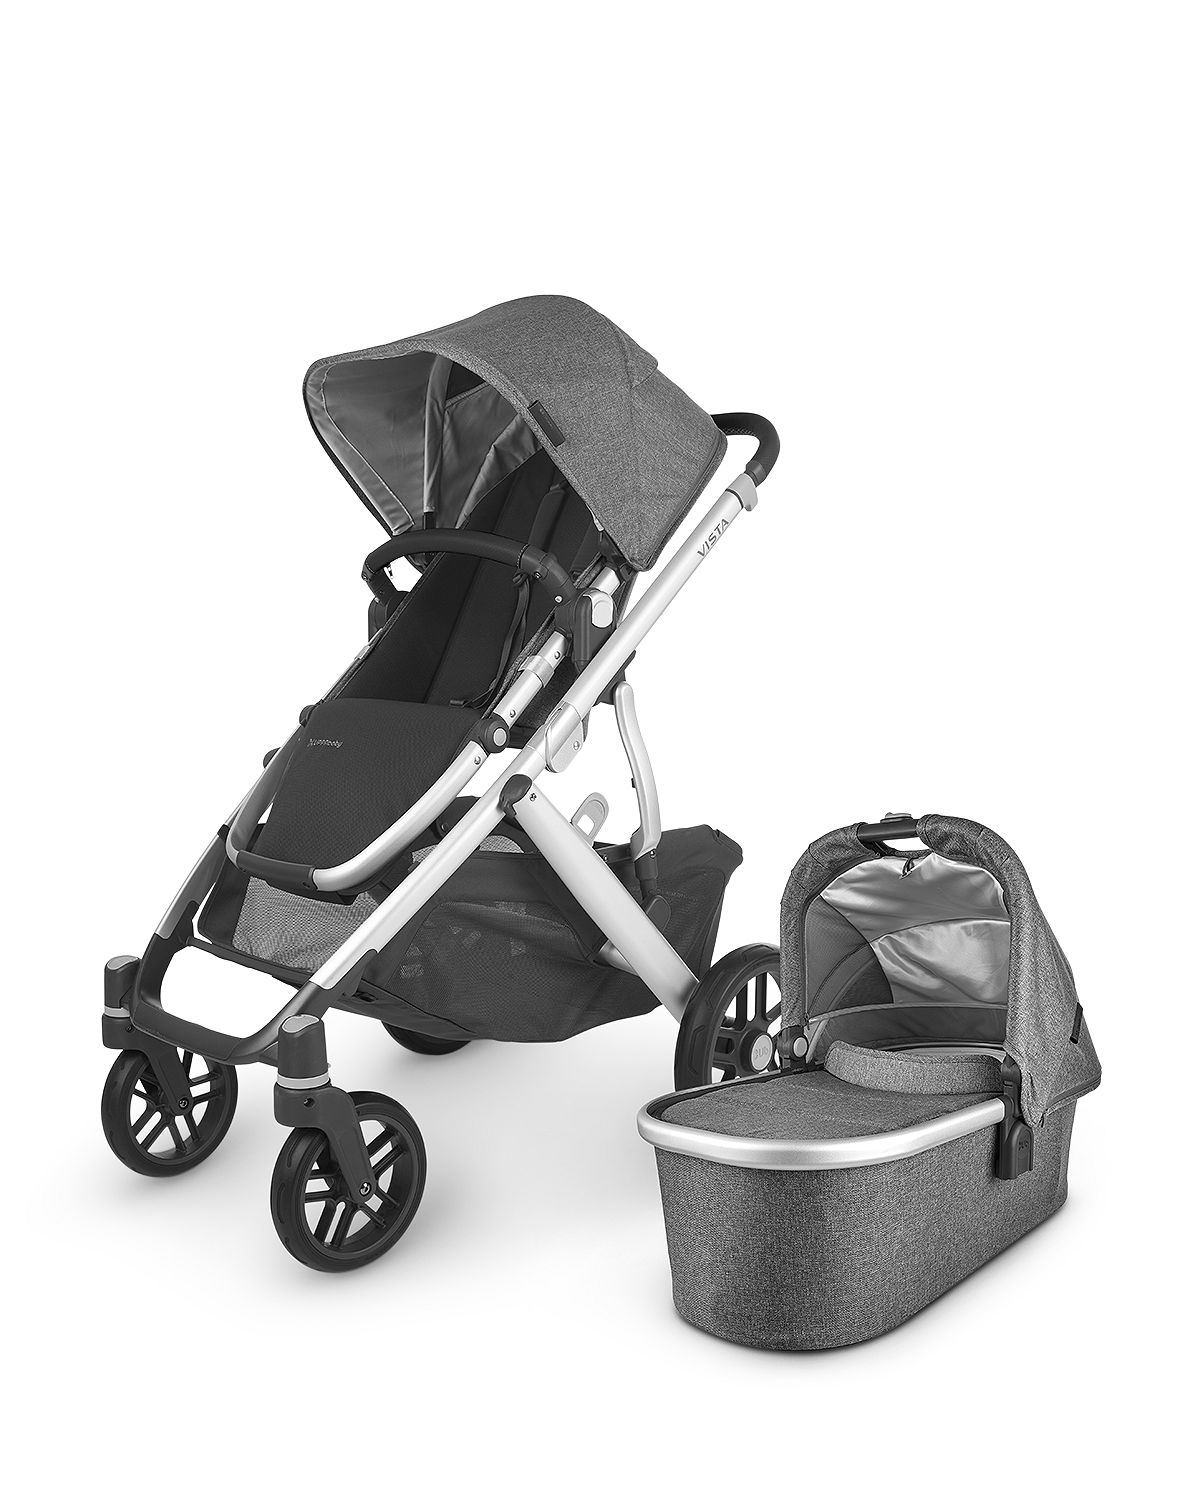 Photo 1 of Vista V2 Stroller - Jordan (Charcoal/Silver/Black Leather)
